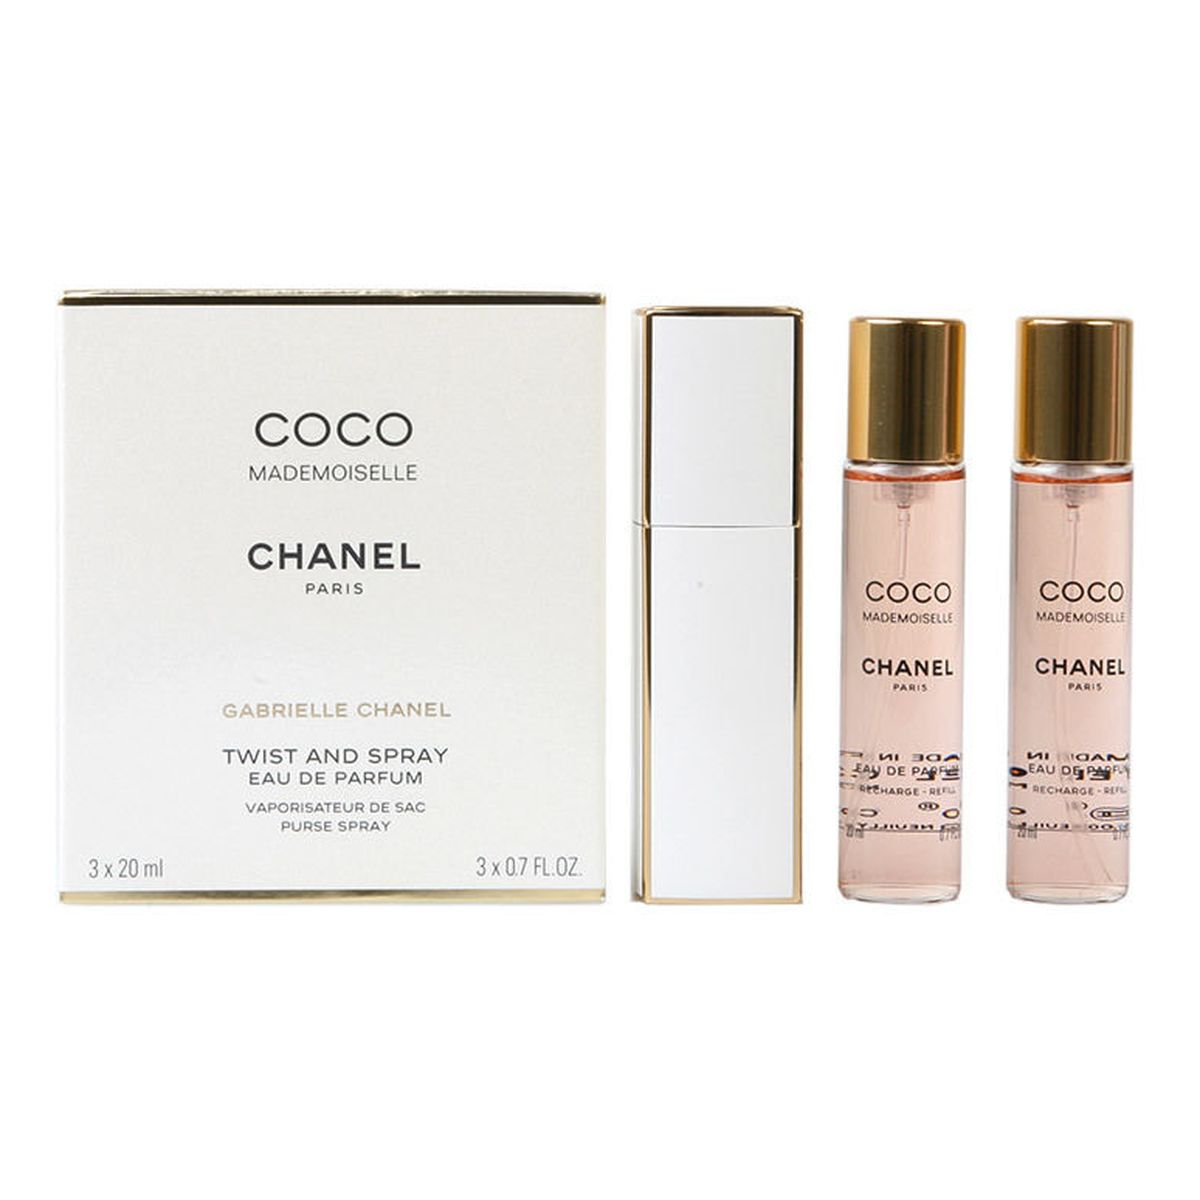 Chanel Coco Mademoiselle Woda perfumowana + Woda perfumowana 2 x spray wkład uzupełniający 20ml